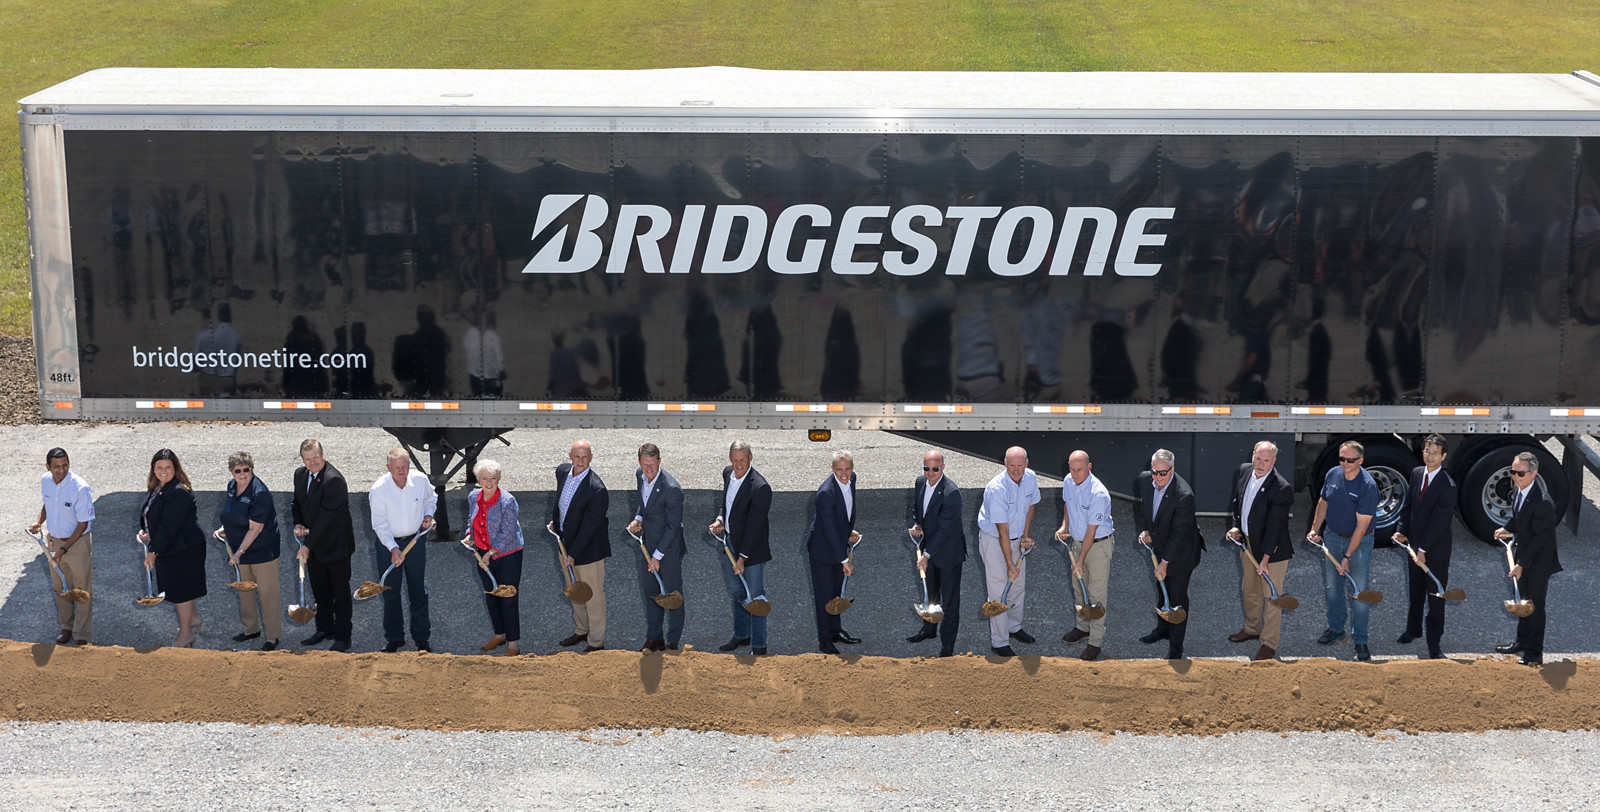 Mit dem Spatenstich am 16. August hat die Expansion des Bridgestone-Standorts in Warren County begonnen.